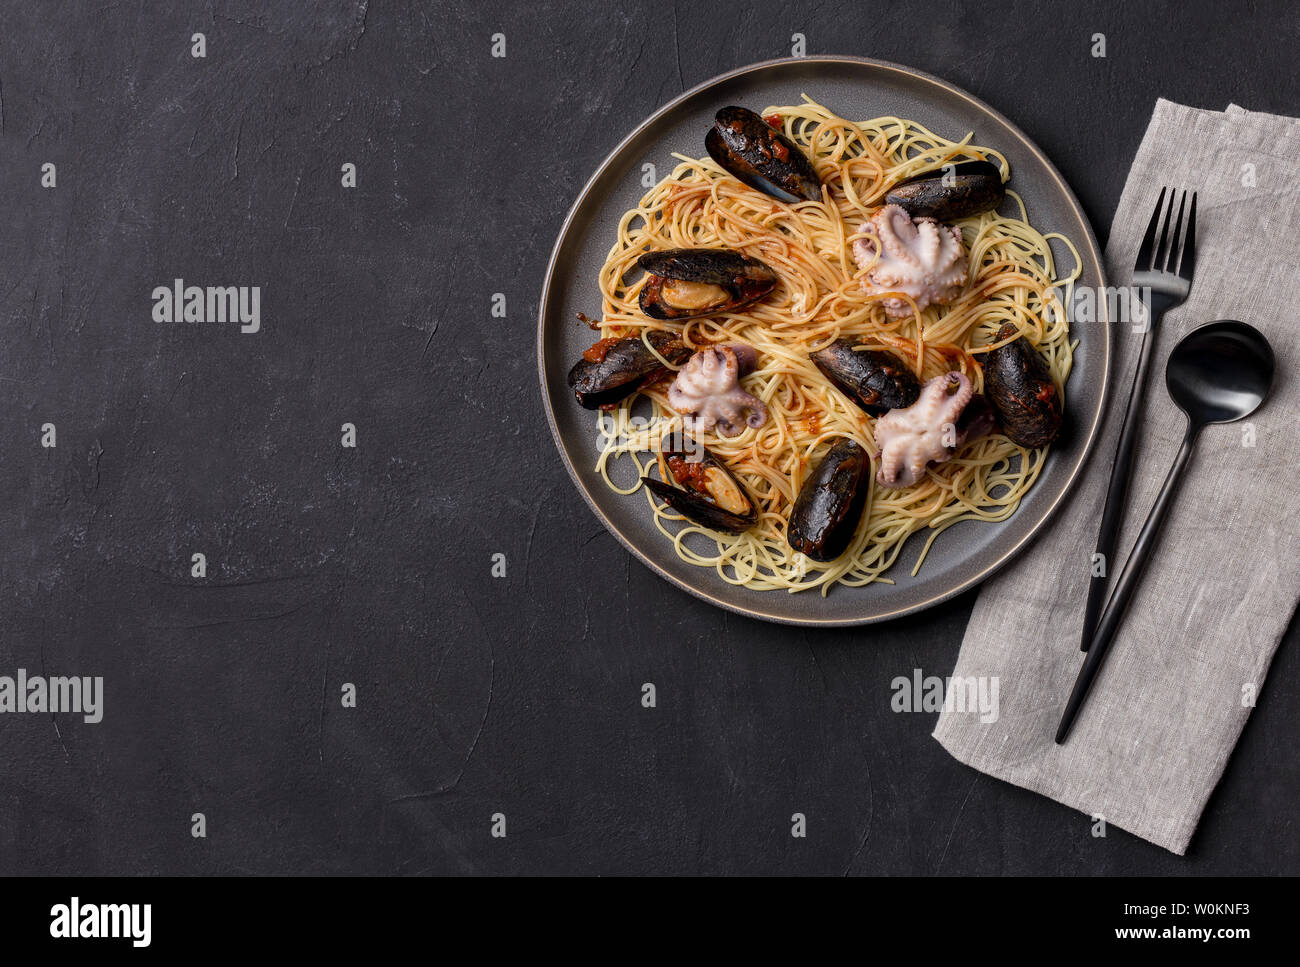 Gli spaghetti con le cozze e il polpo in lastra grigia con stoviglie e tovagliolo su sfondo nero. Vista superiore piatta, laici dello spazio libero Foto Stock